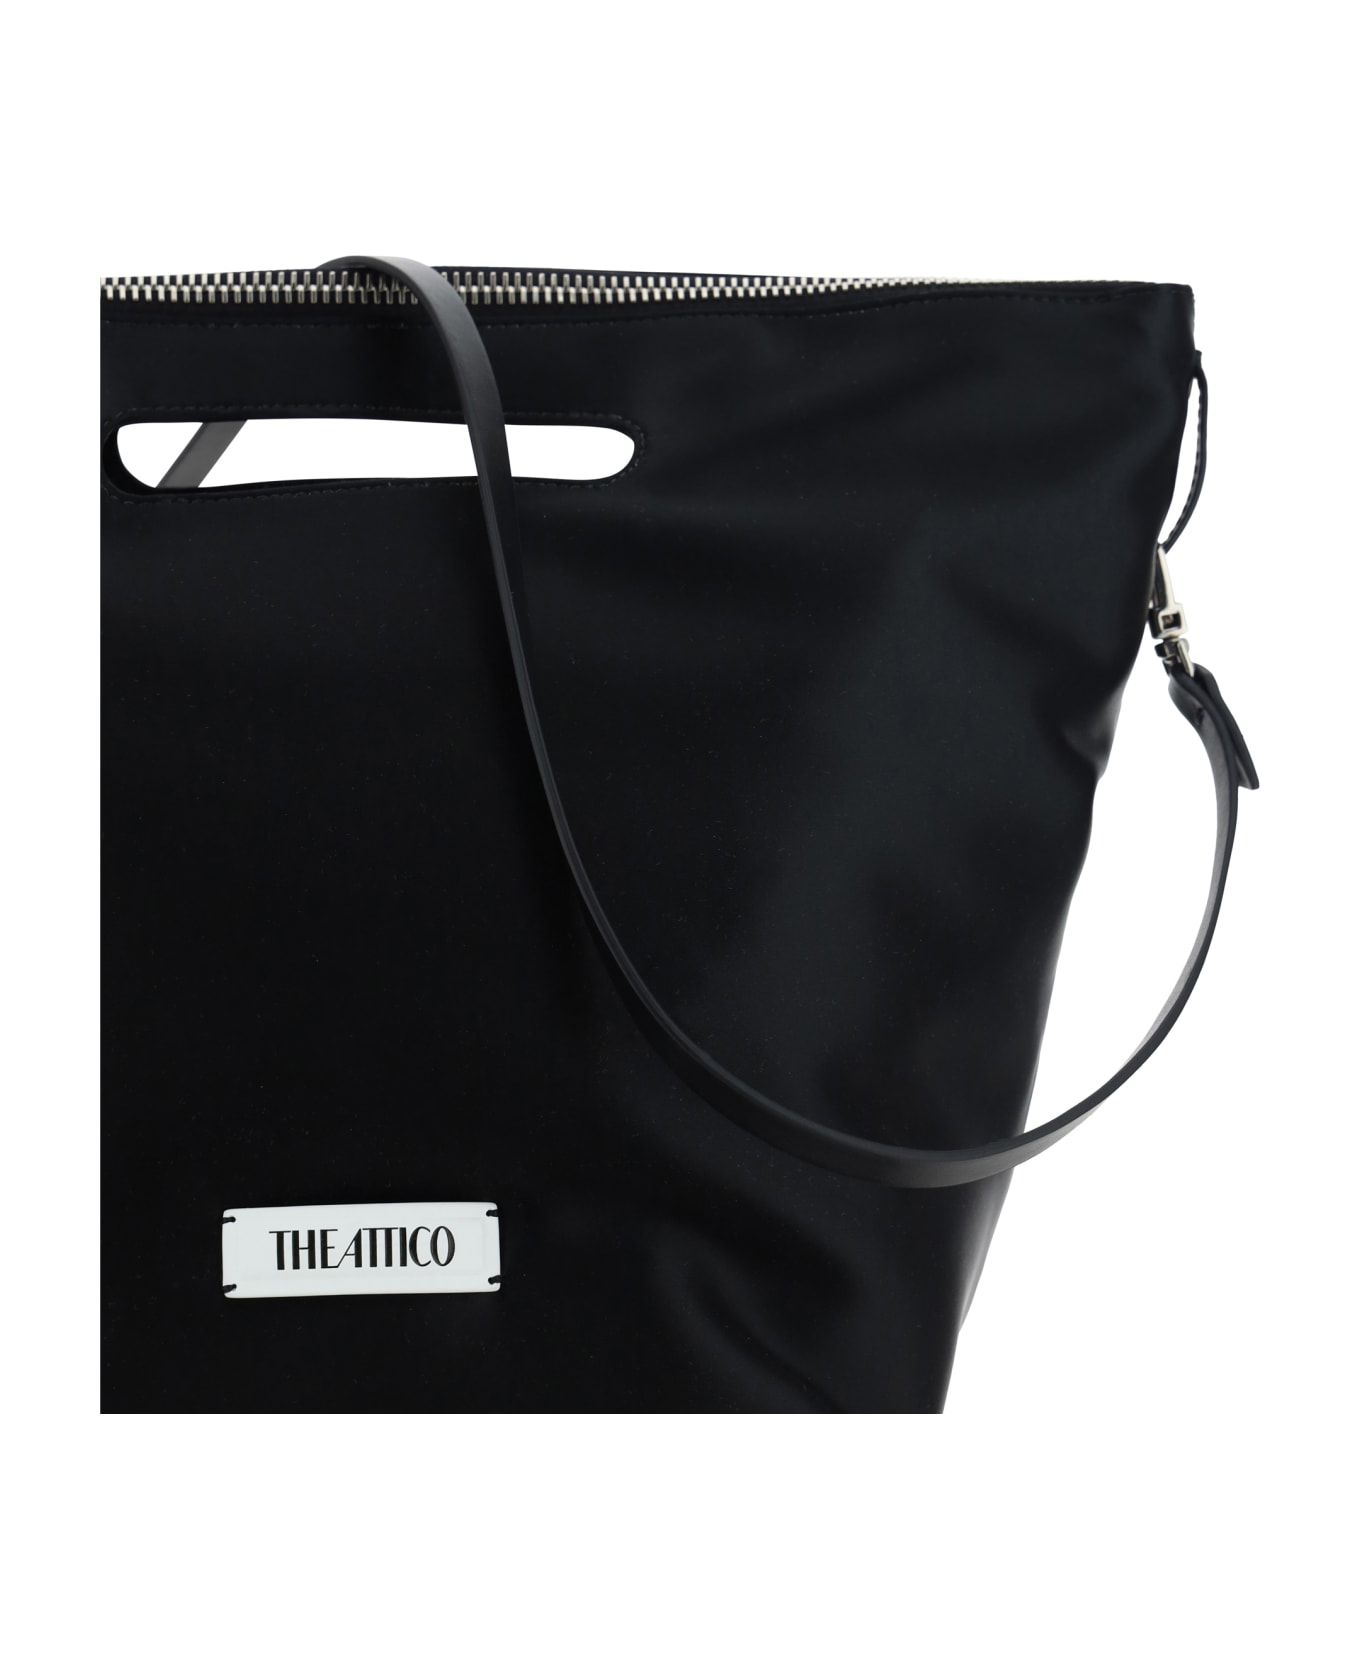 The Attico Via Dei Giardini 30 Handbag - Black トートバッグ